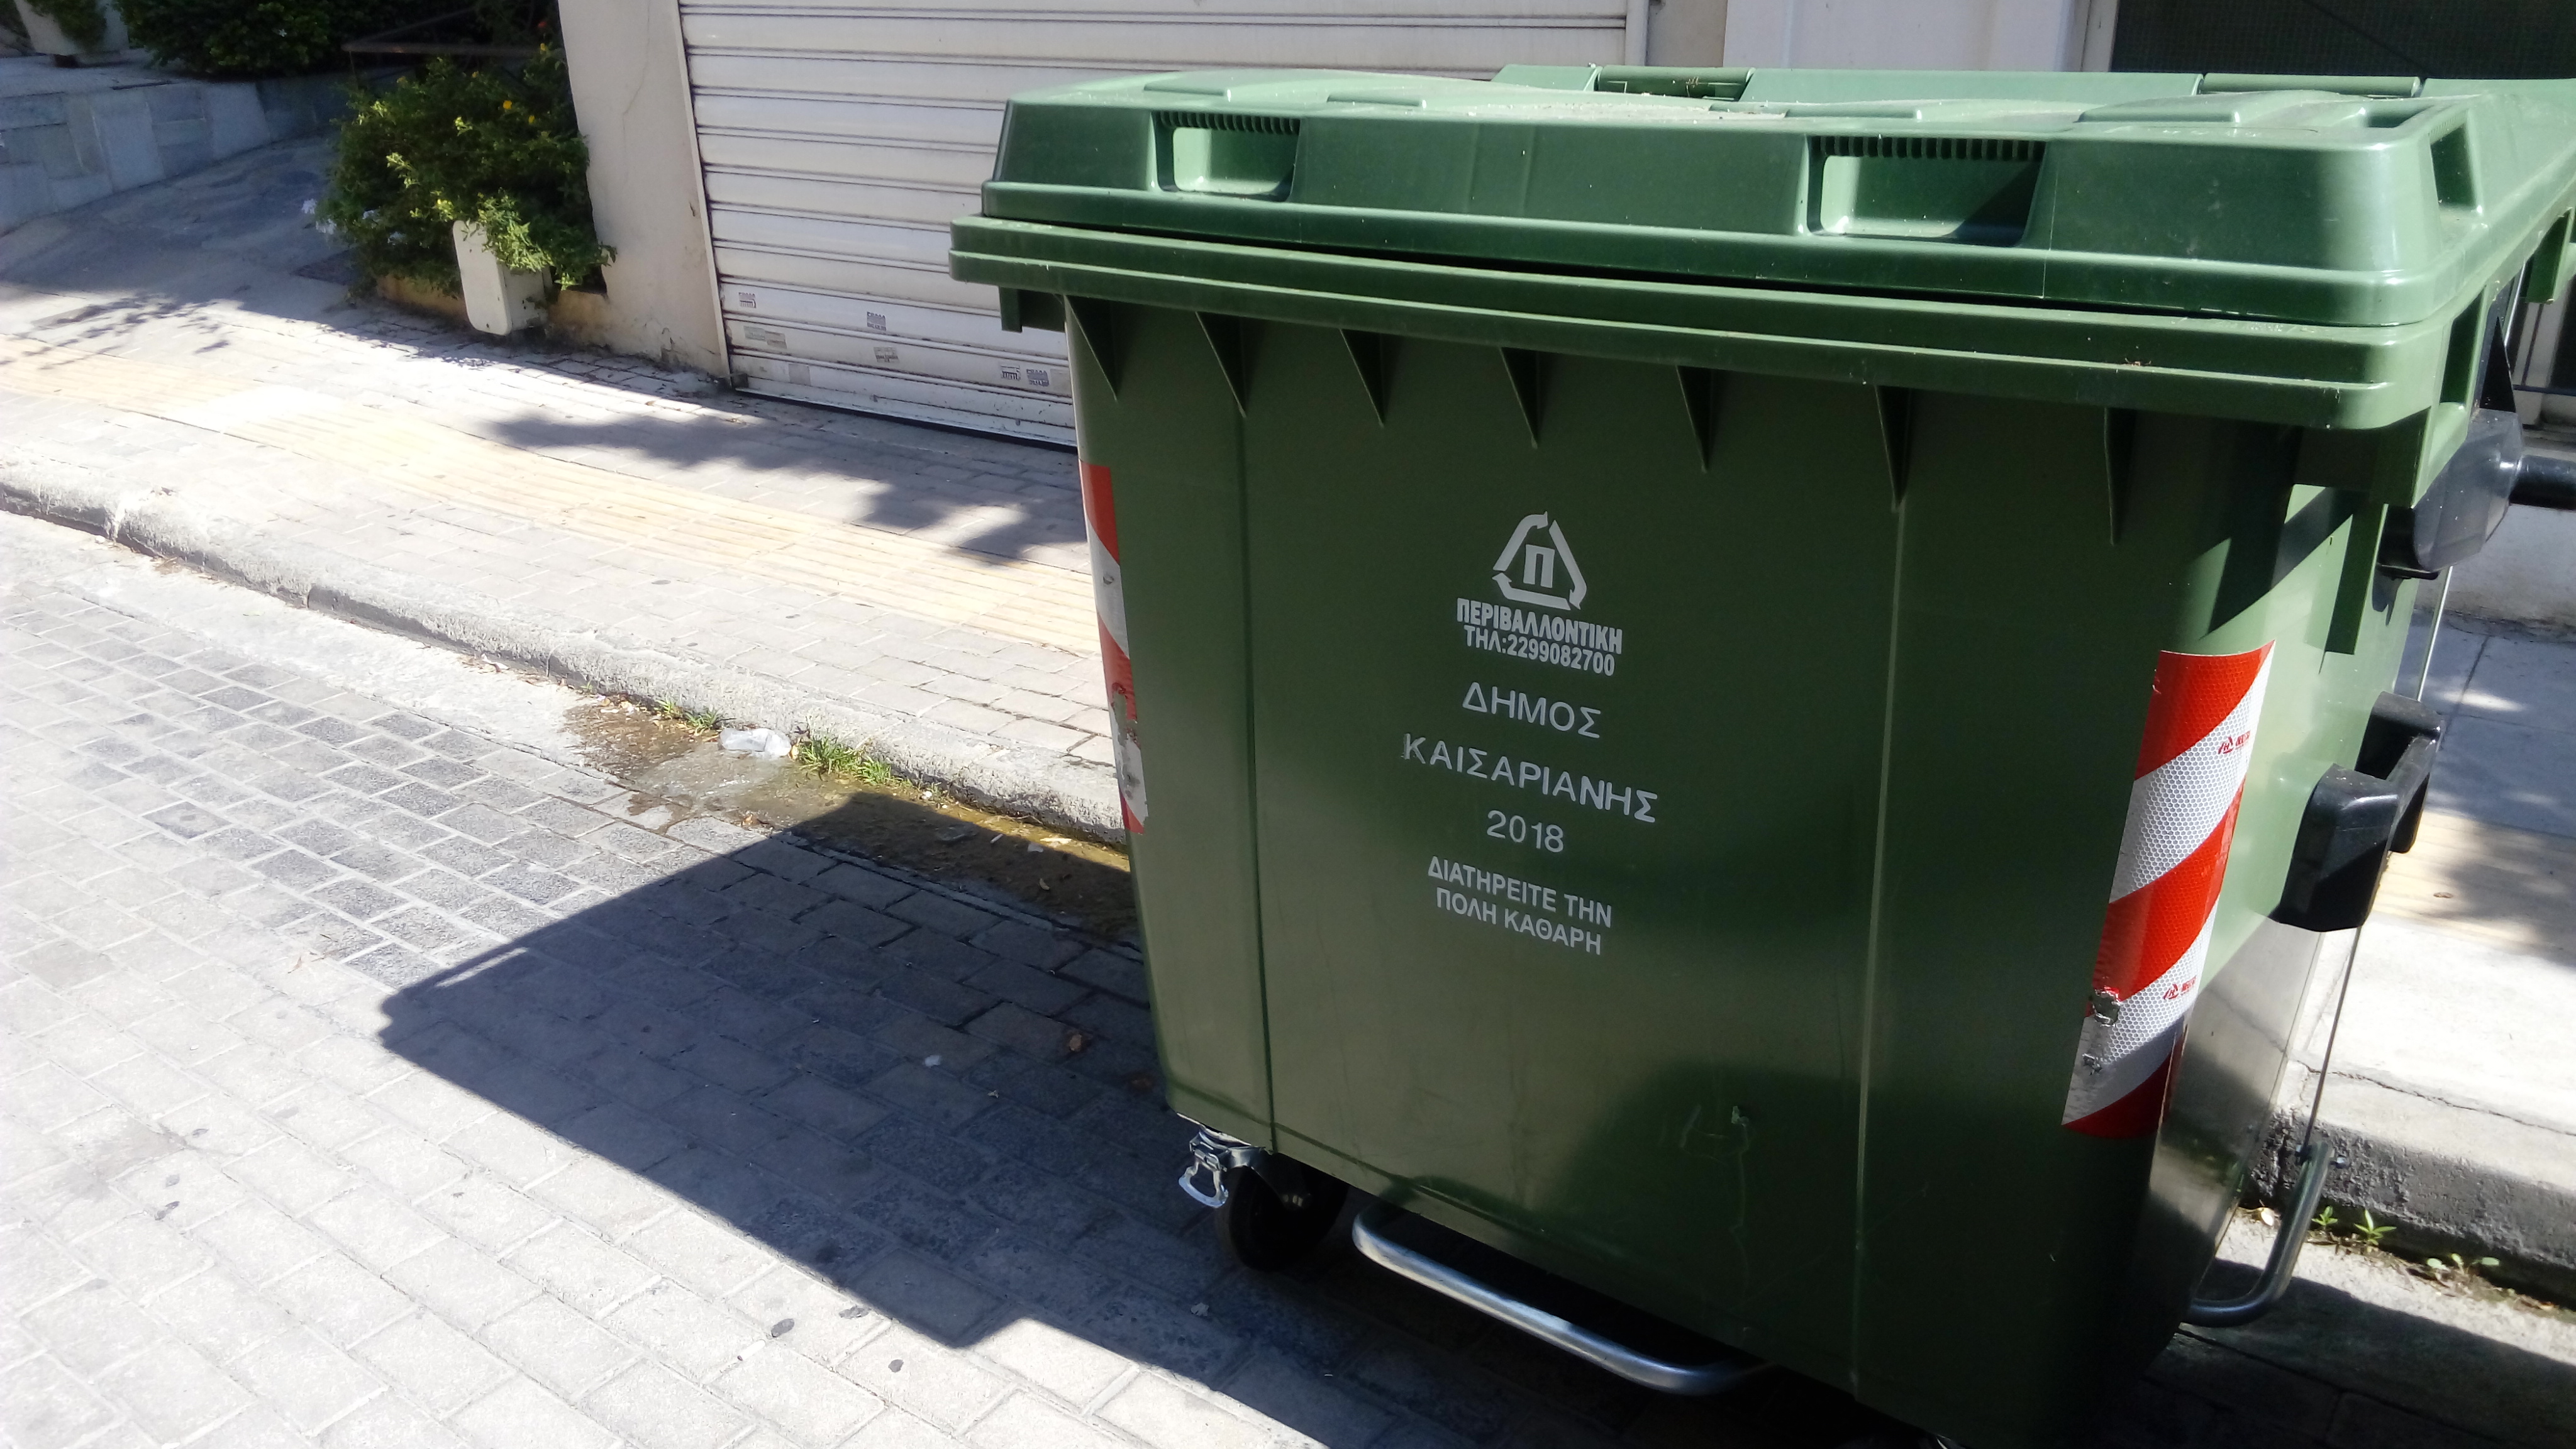 Νέοι κάδοι απορριμμάτων στον Δήμο Καισαριανής | Epoli.gr ...